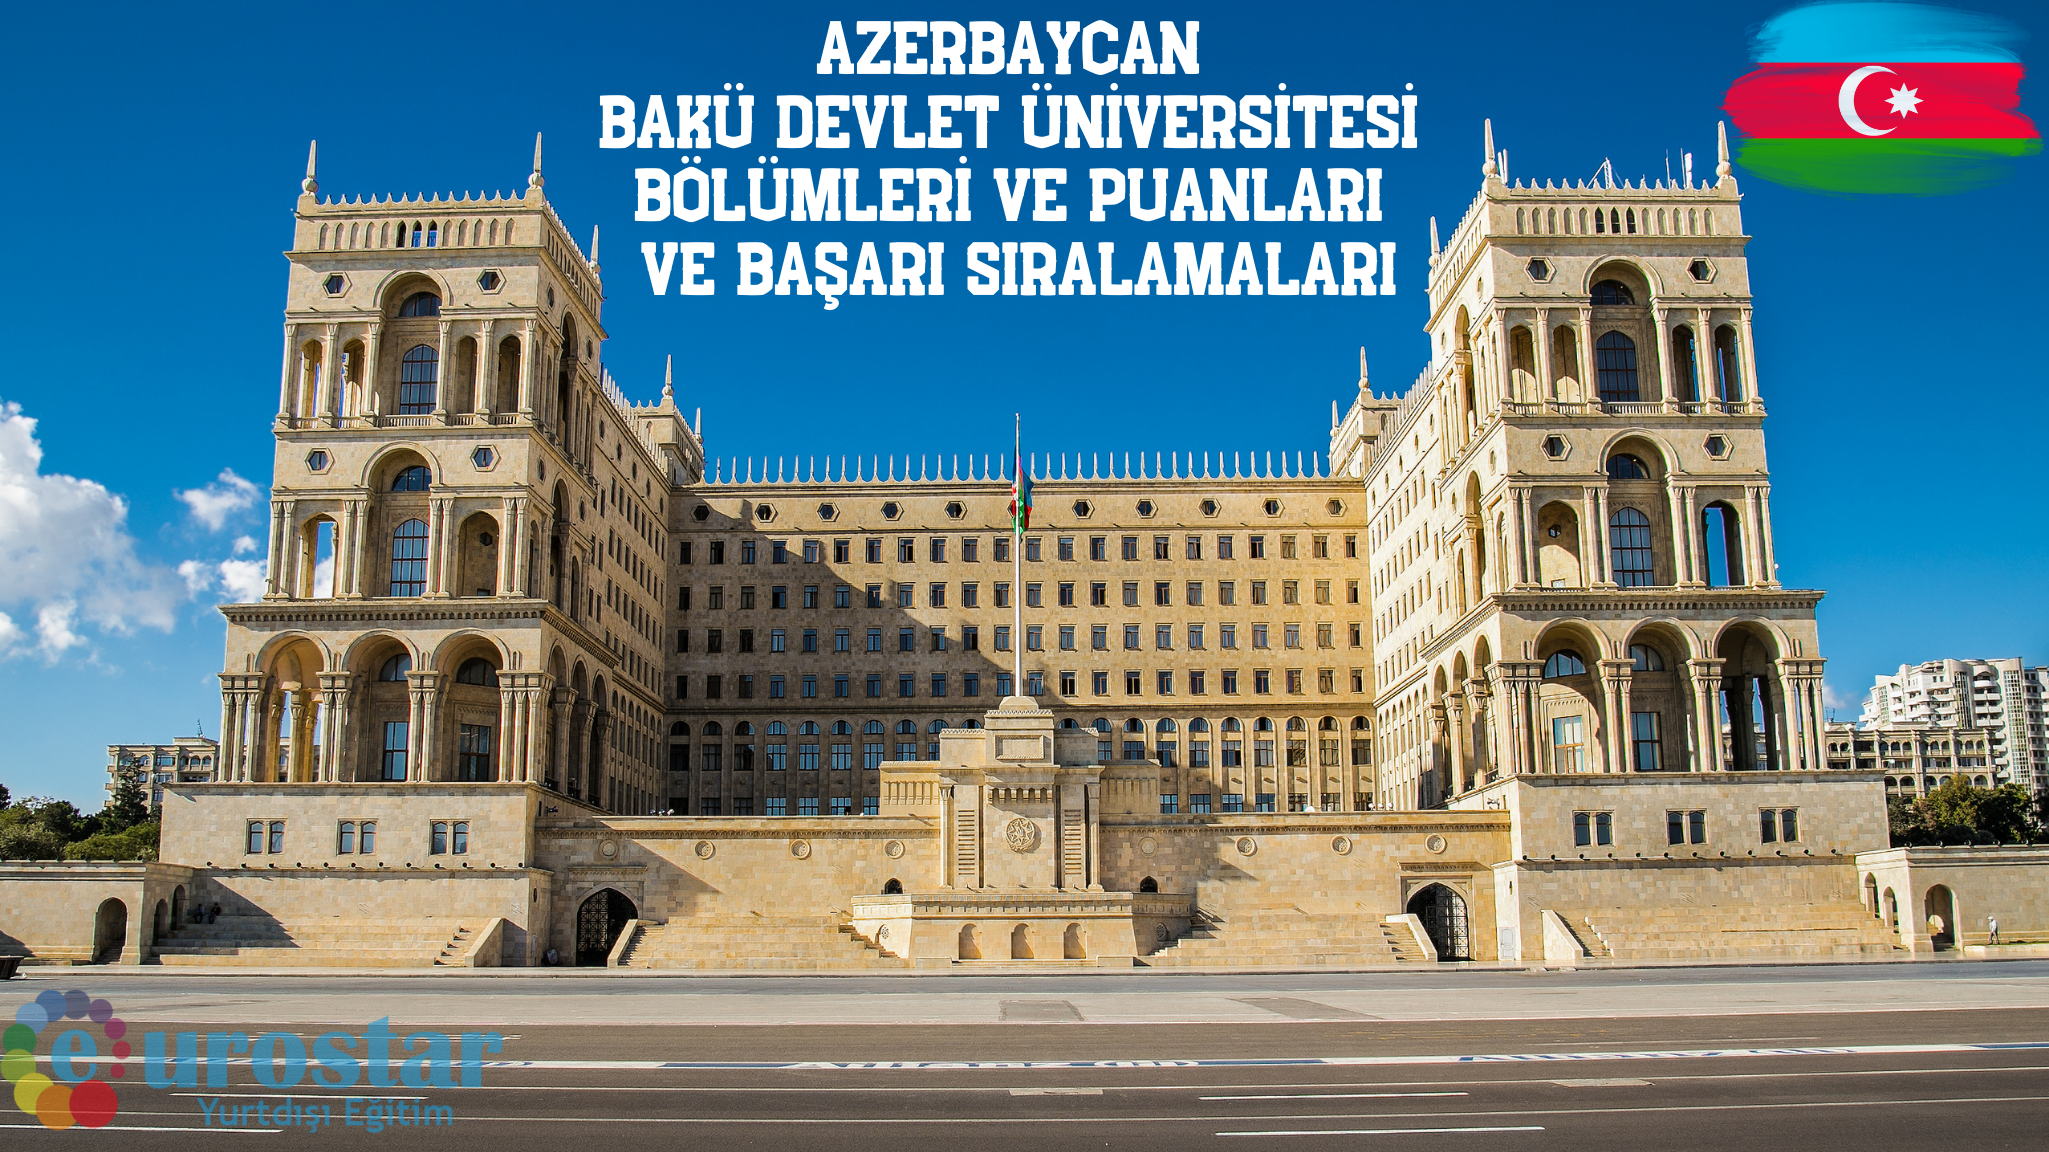 Azerbaycan Bakü Devlet Üniversitesi Bölümleri ve Puanları ve Başarı Sıralamaları